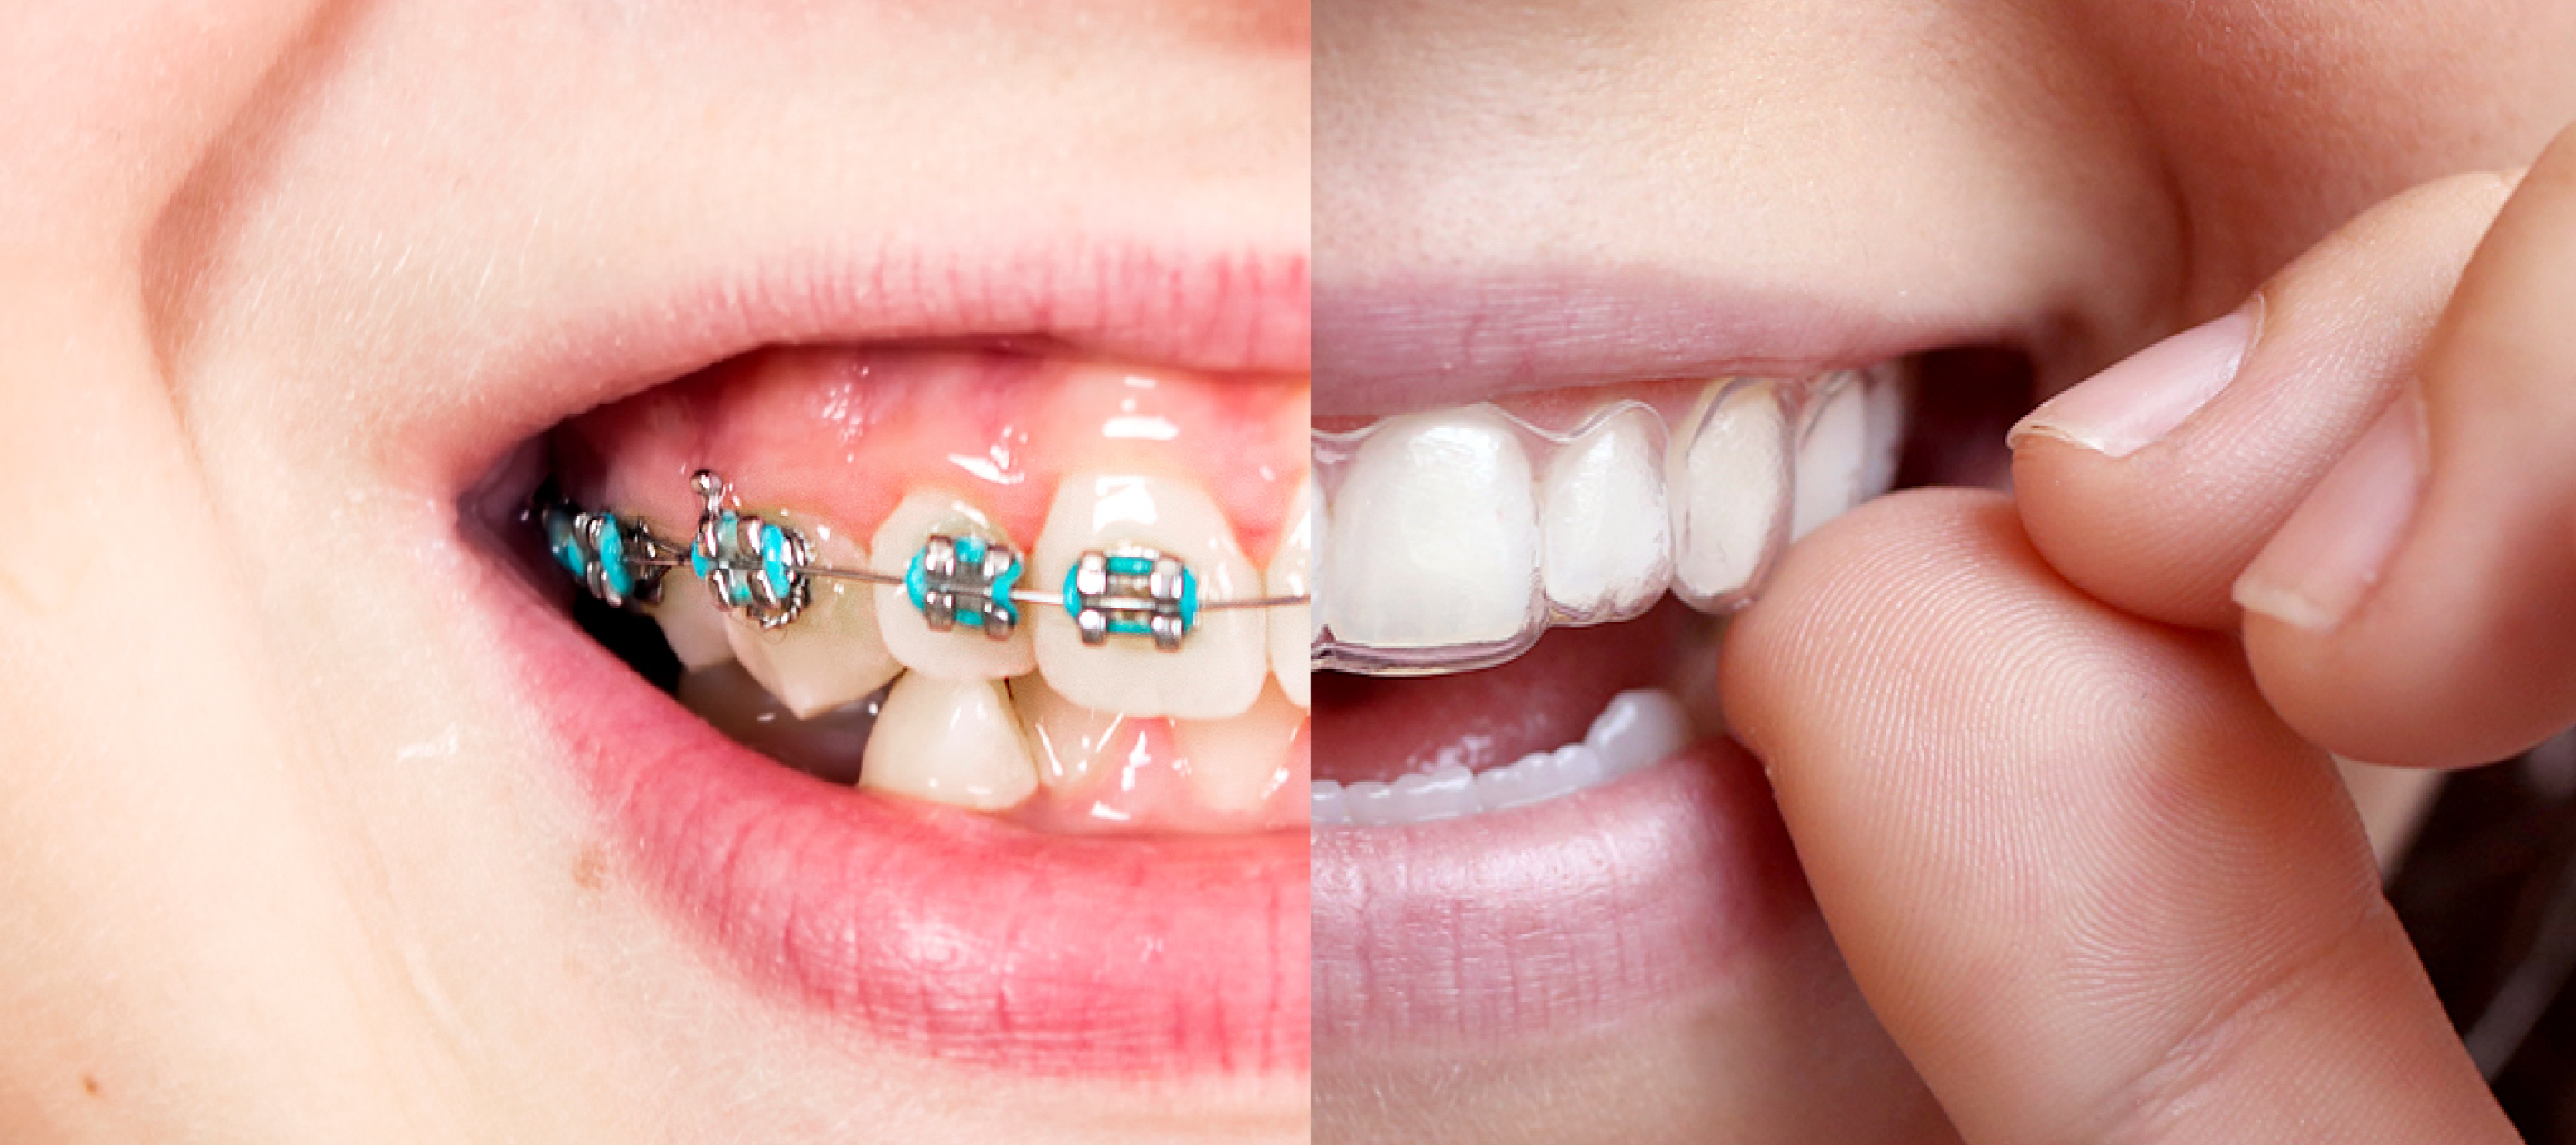 ¿Qué duele más la ortodoncia invisible o los brackets?